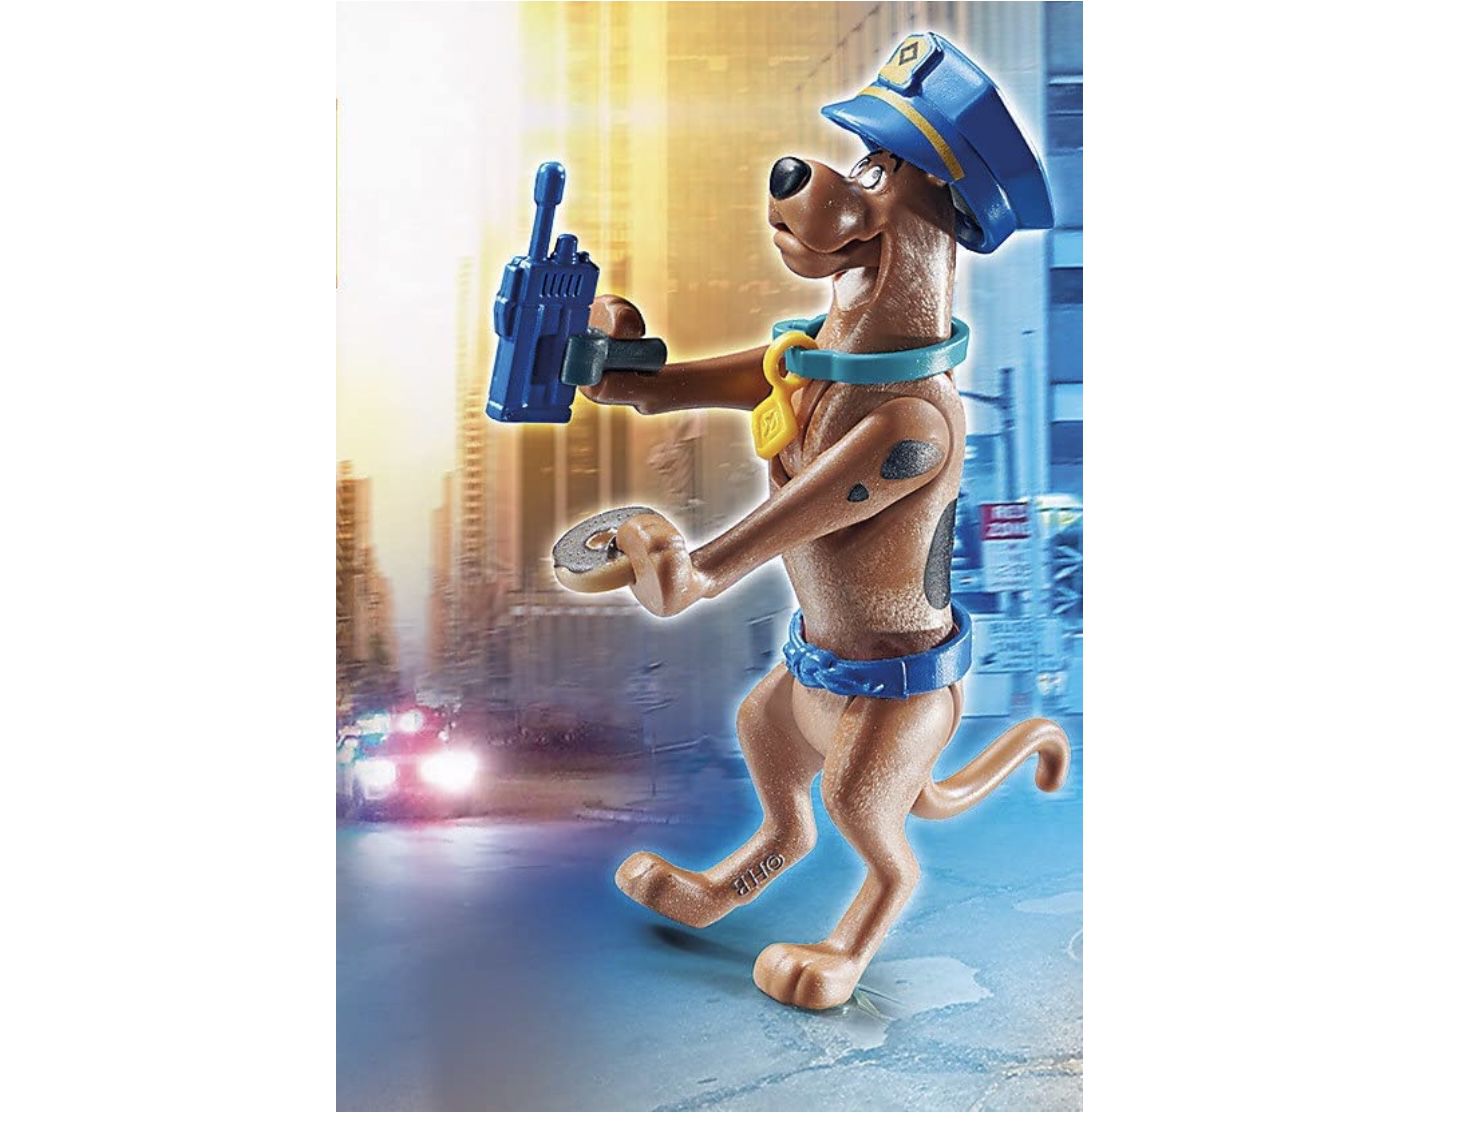 PLAYMOBIL 70714 Scooby DOO! Sammelfigur Polizist für 2,79€ (statt 6€)   Prime